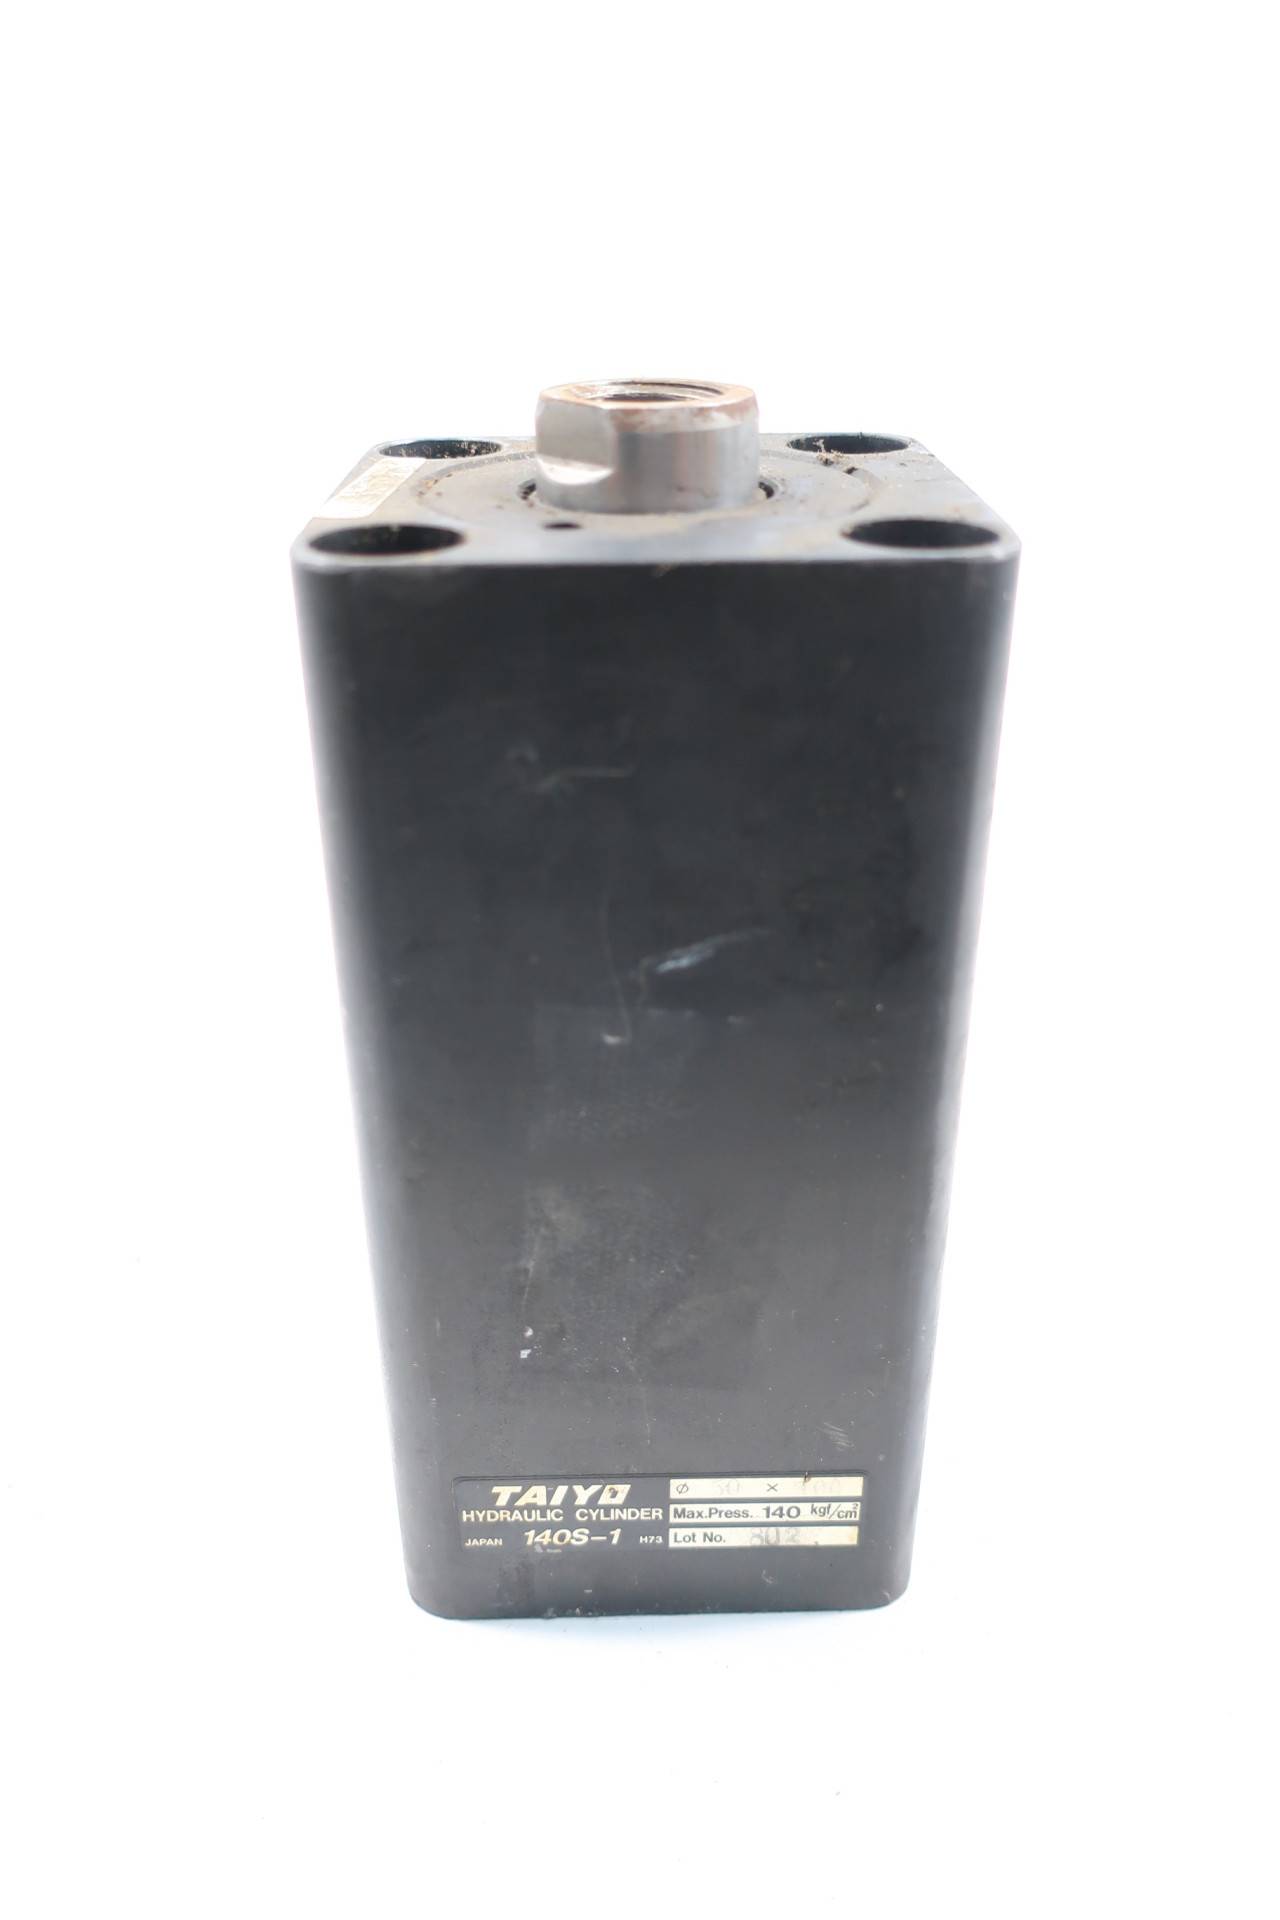 Taiyo 140S-1 Hydraulic Cylinder 140kgf/cm2 50mm 100mm